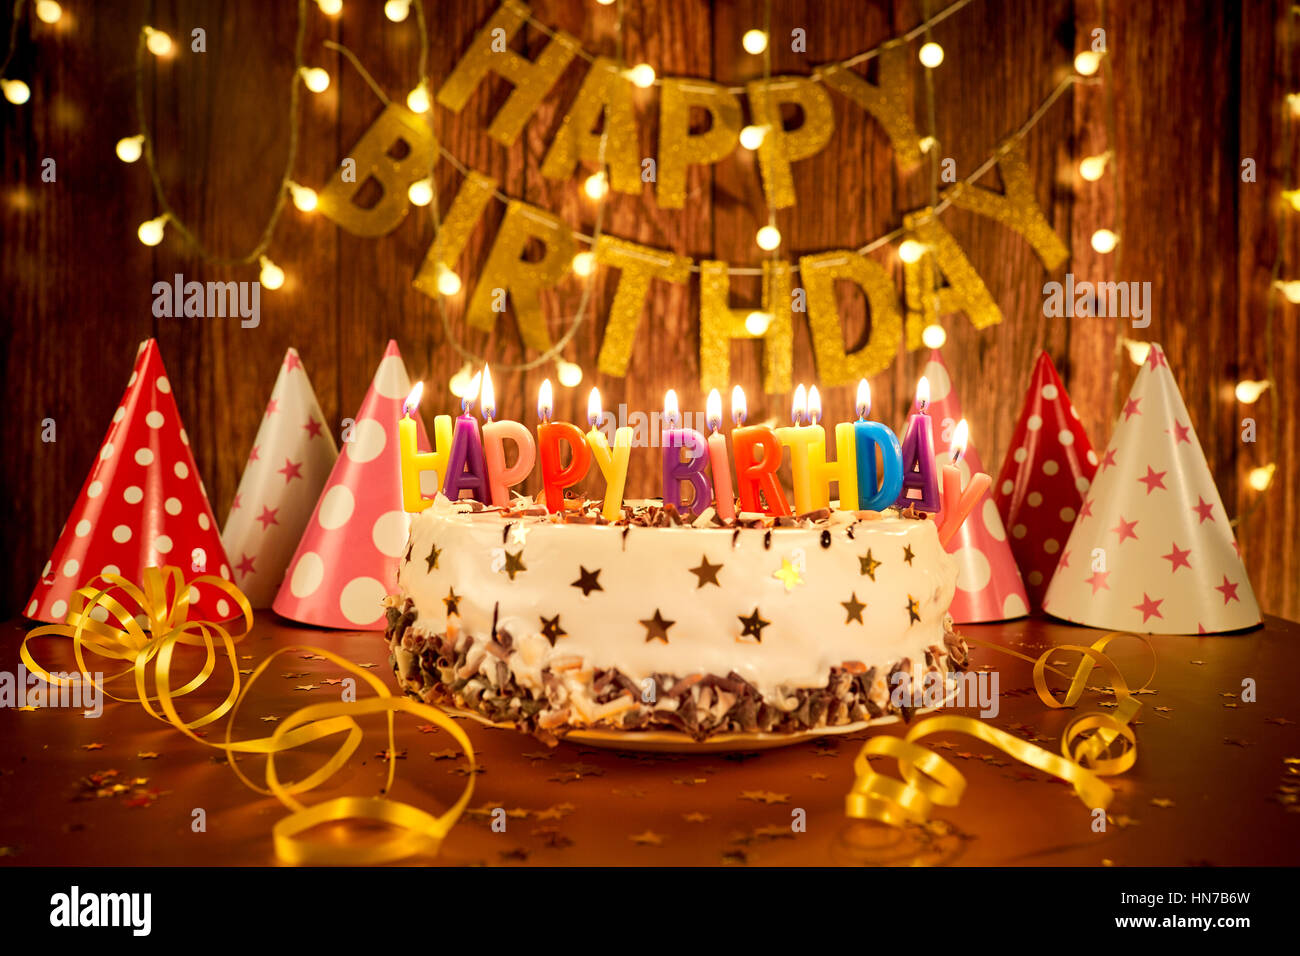 Hãy xem bánh sinh nhật và nến trên nền chùm đèn đầy màu sắc để tạo không gian sinh nhật lãng mạn và ấm cúng nhất cho bạn bè và gia đình của bạn.